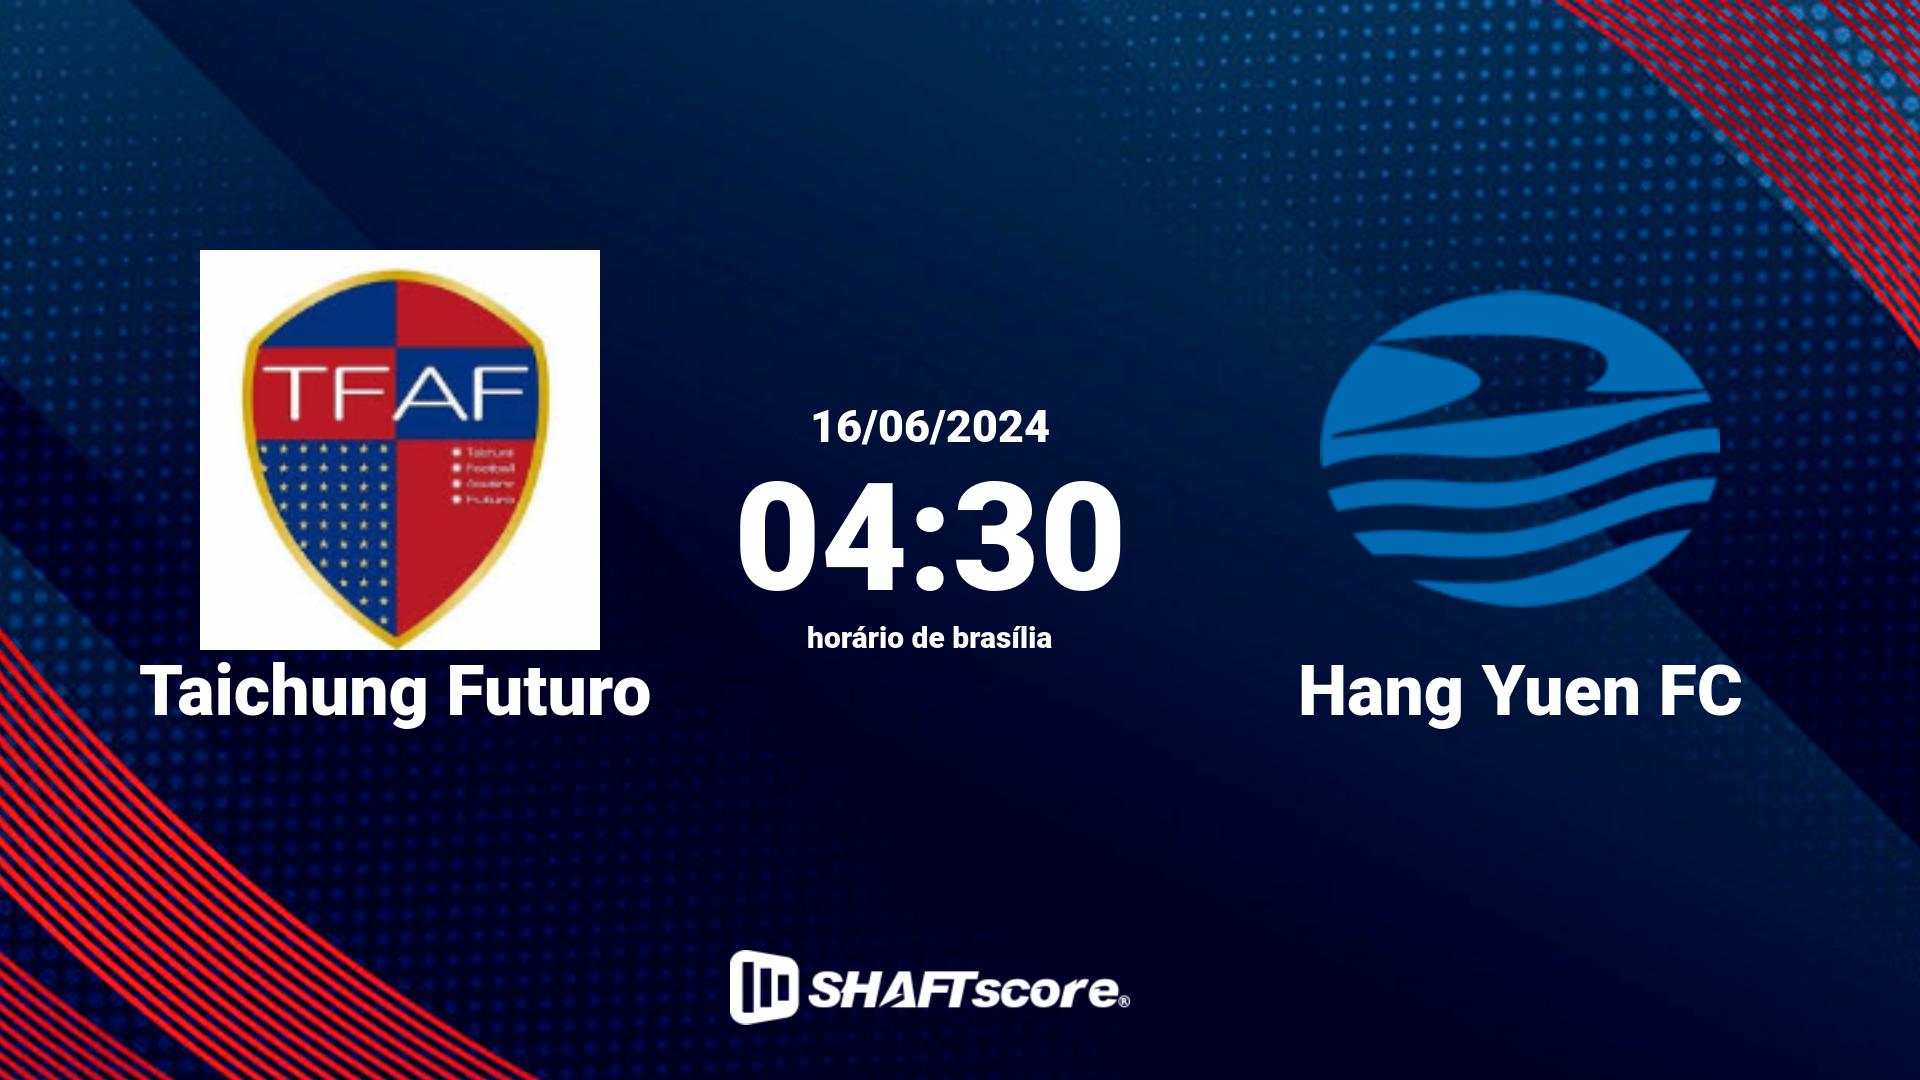 Estatísticas do jogo Taichung Futuro vs Hang Yuen FC 16.06 04:30